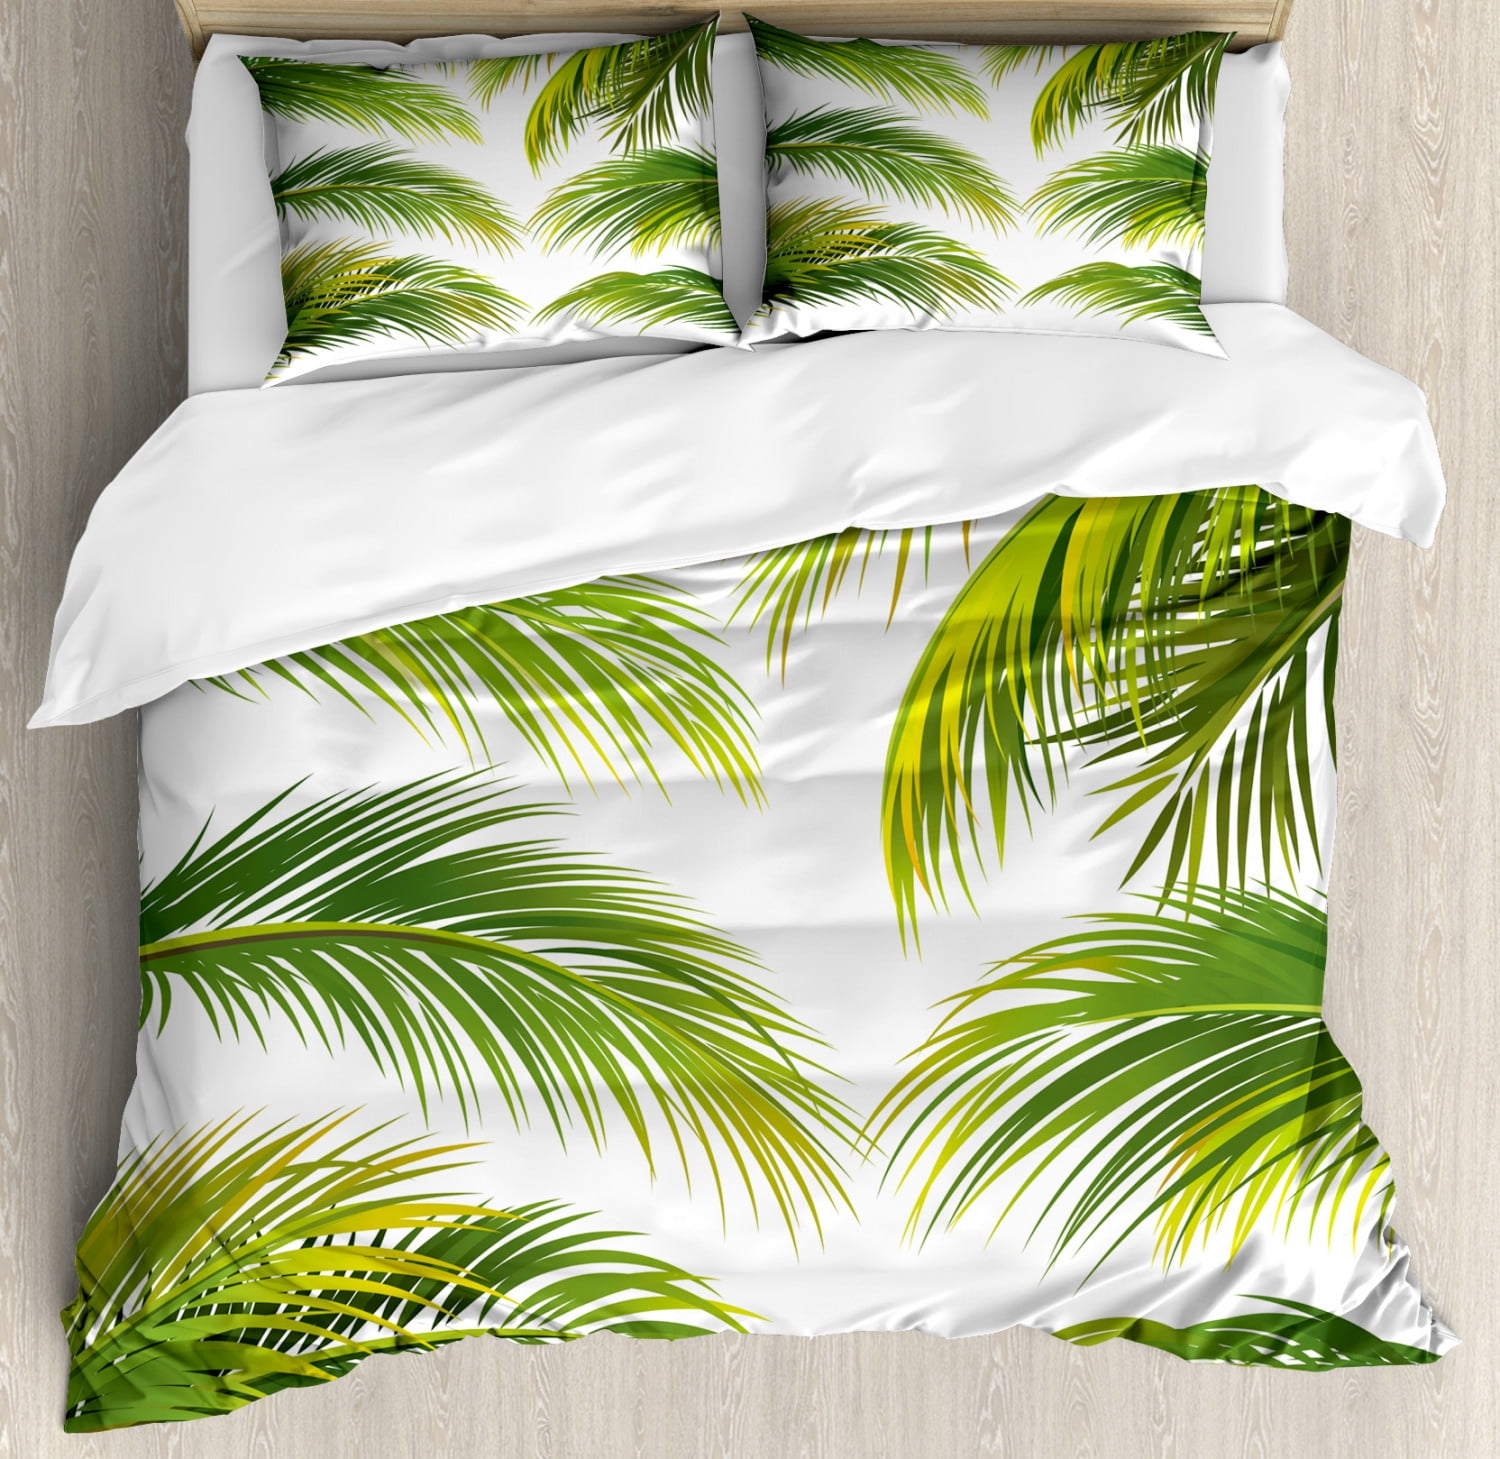 Palm Leaf King Size Duvet Cover Set, Palm Leaf Duvet Cover